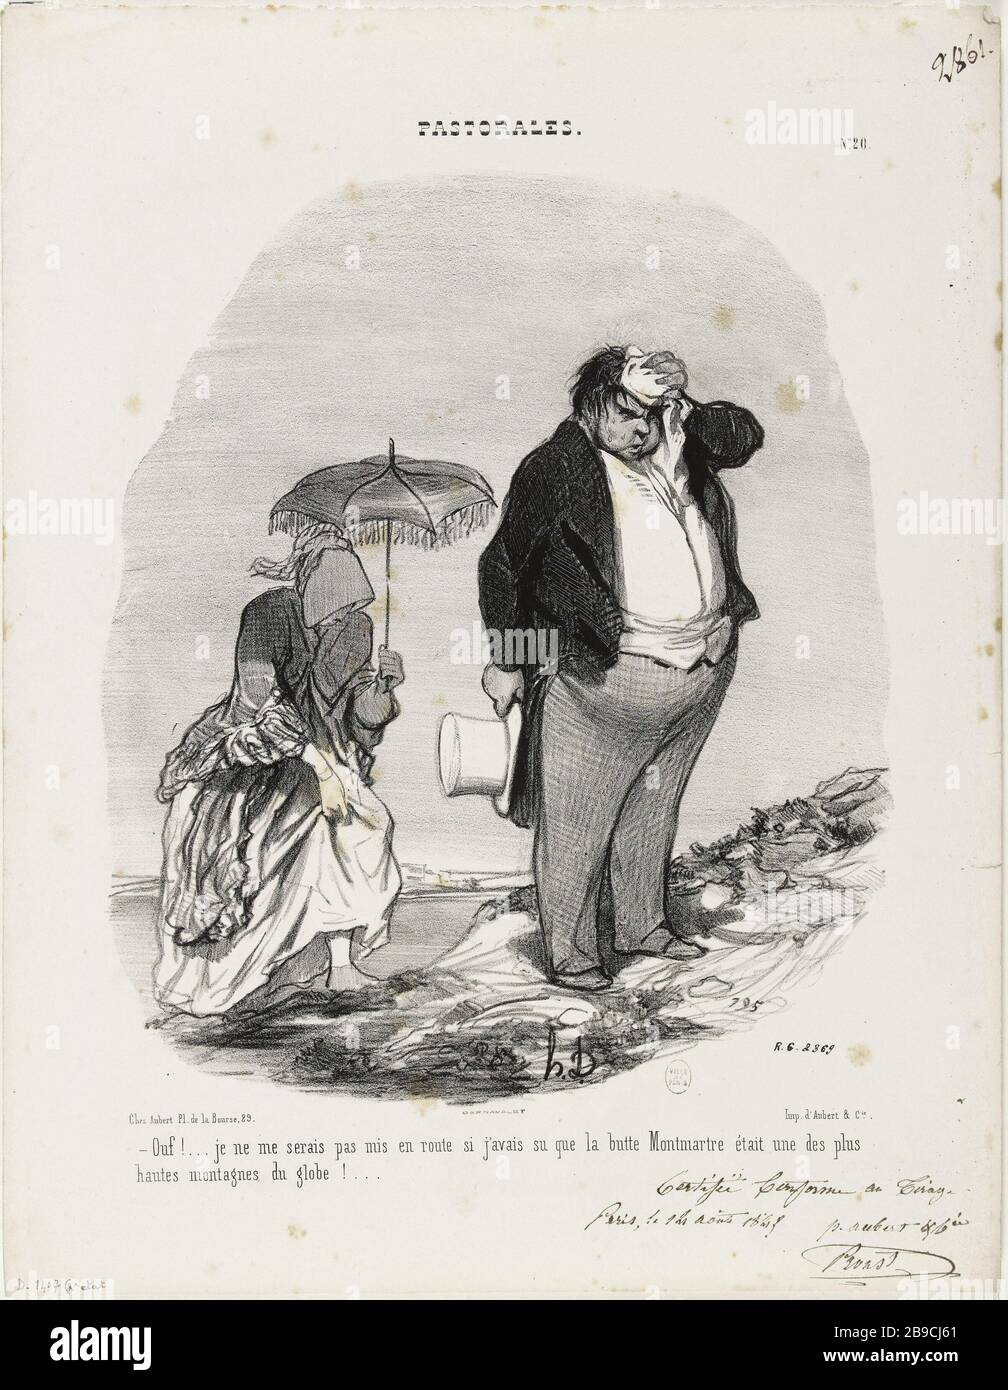 PASTORAL - PHEW! . ICH WÜRDE MICH NICHT AUFBRINGEN, WENN ICH GEWUSST HÄTTE, DASS DER BUTTE MONTMARTRE EINES DER HÖCHSTEN BERGE DER WELT WAR! . (PL.20) Honoré Daumier (1808-1879).'Pastorales - ouf! . je me serais pas mis en Route si j'avais su que la butte Montmartre était une des plus hautes montagnes du Globe! . (pl.20)". Lithographie en noir. Paris, musée Carnavalet. Stockfoto